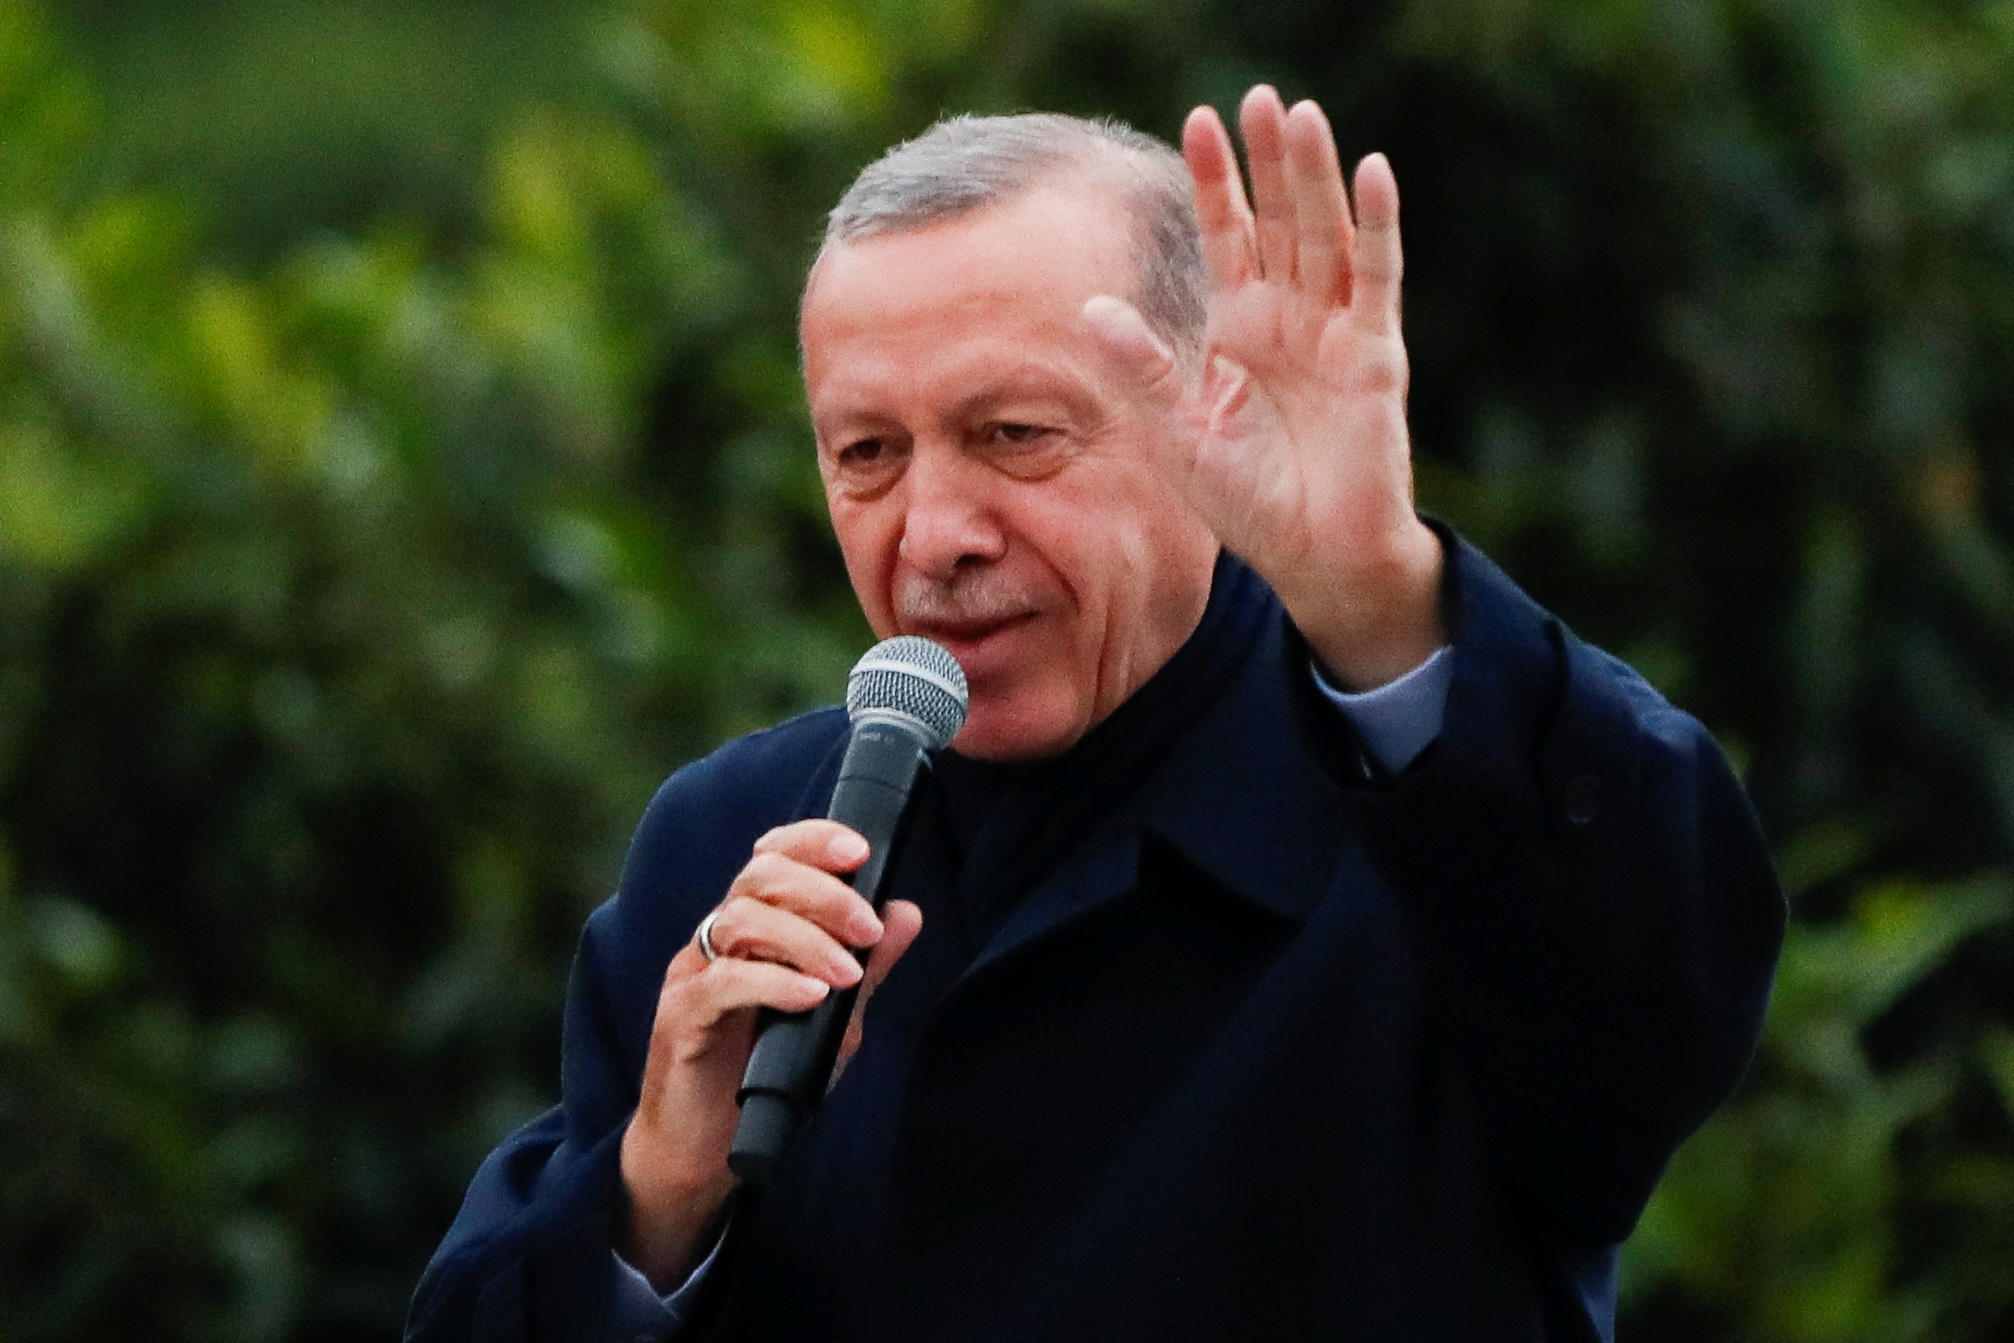 Le président turc Tayyip Erdogan salue ses partisans après avoir revendiqué la victoire à la présidentielle. REUTERS/Murad Sezer